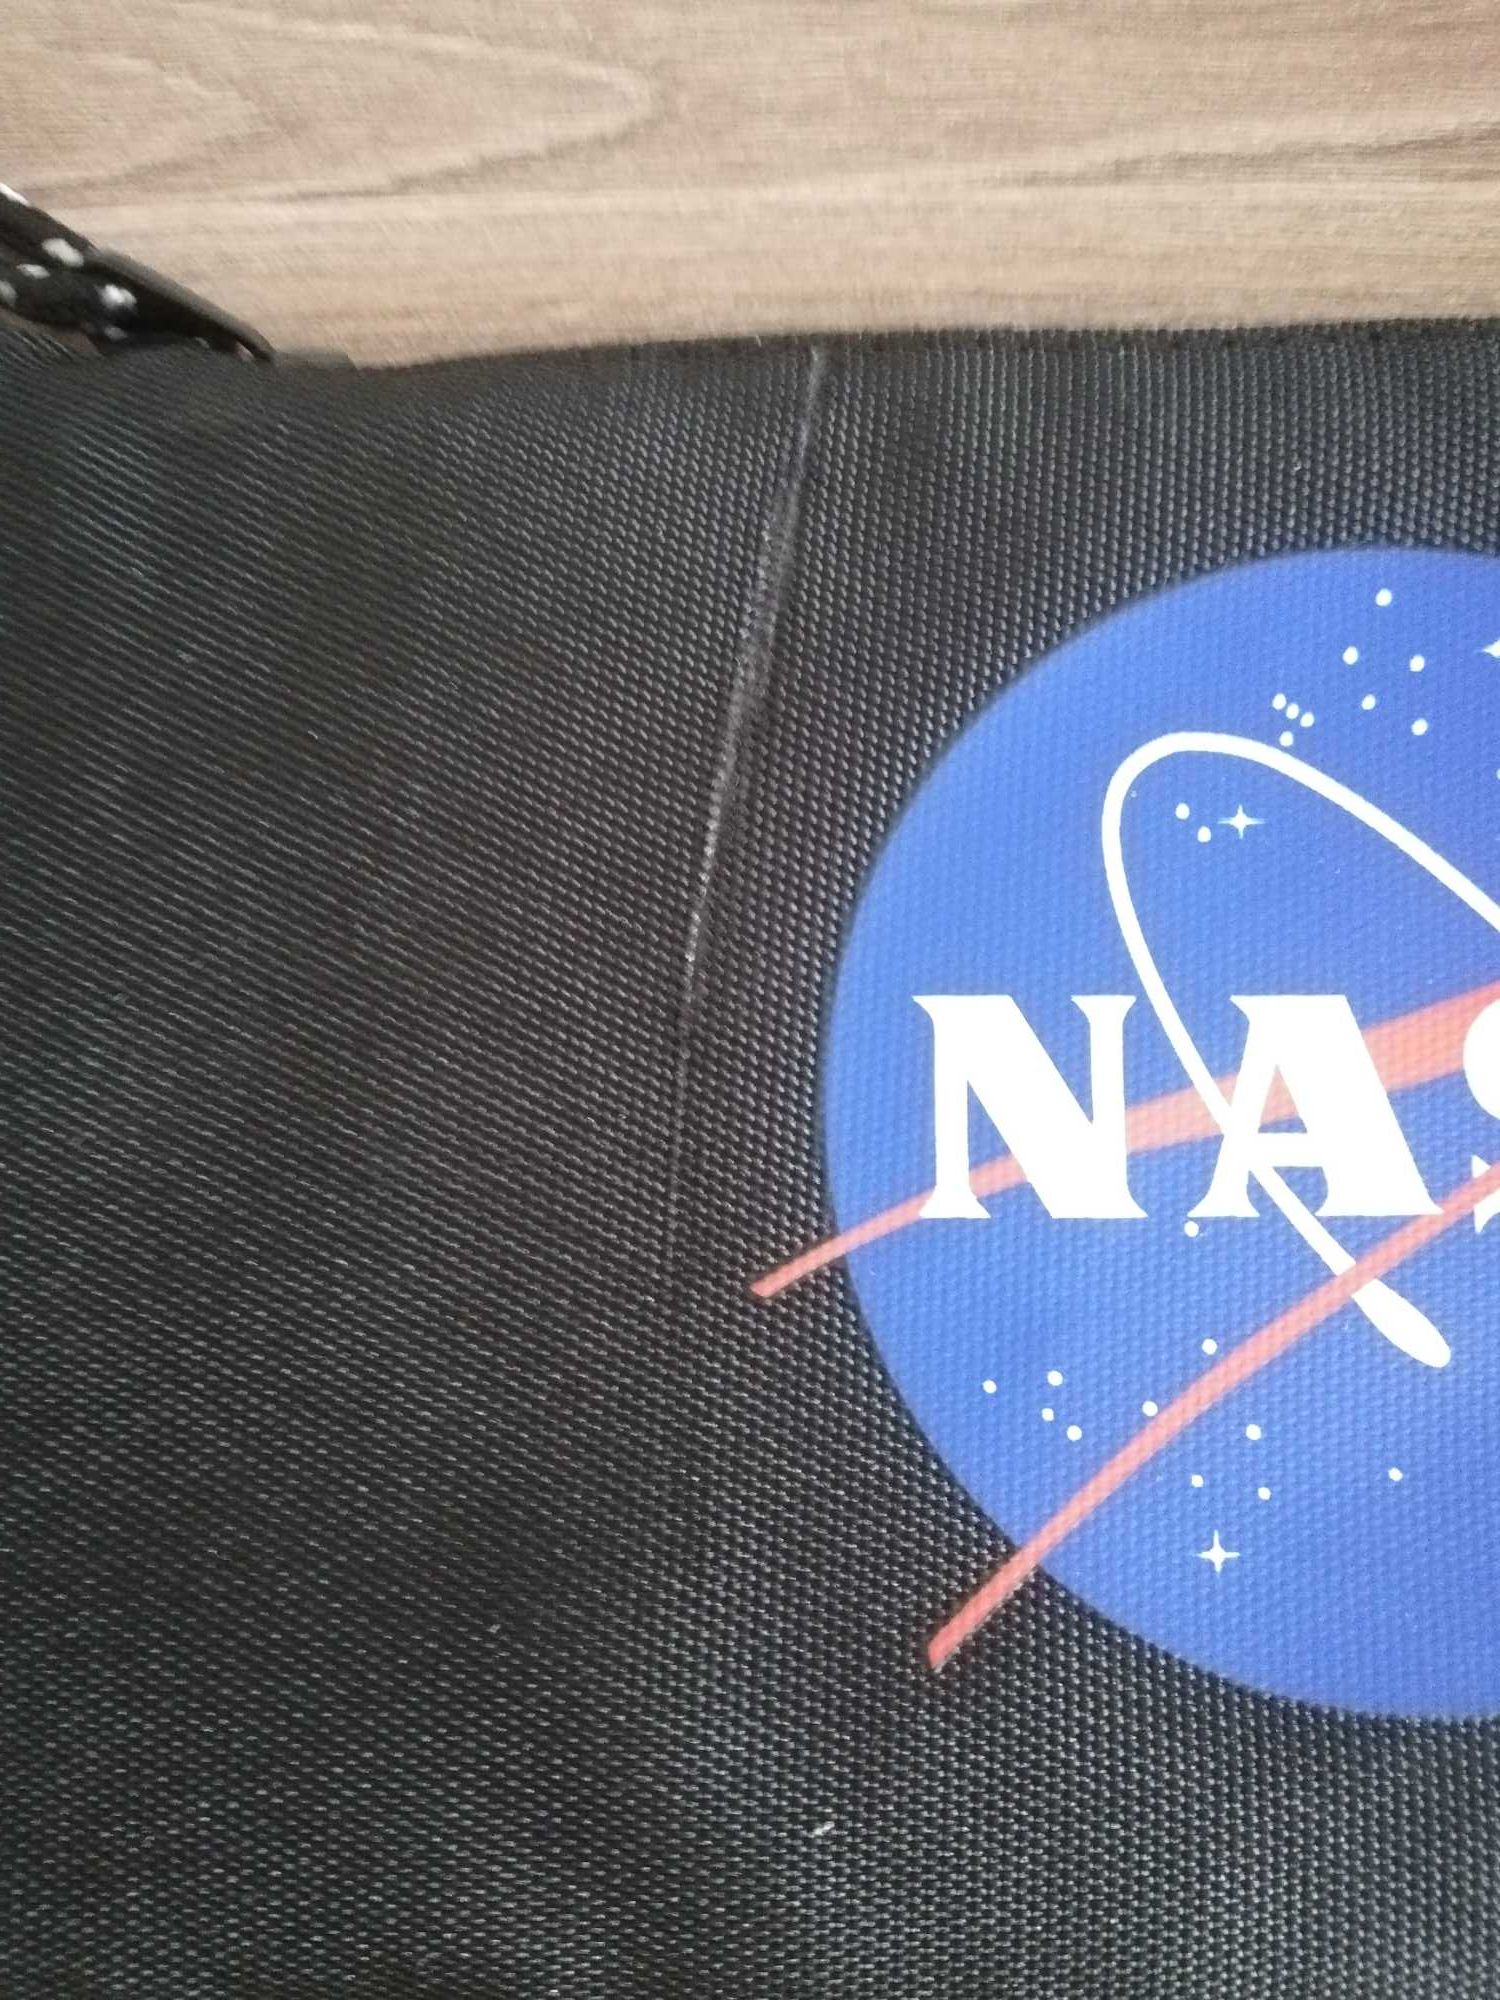 Potrójny piórnik NASA Black-FAN, czarny, 23 x 11 cm